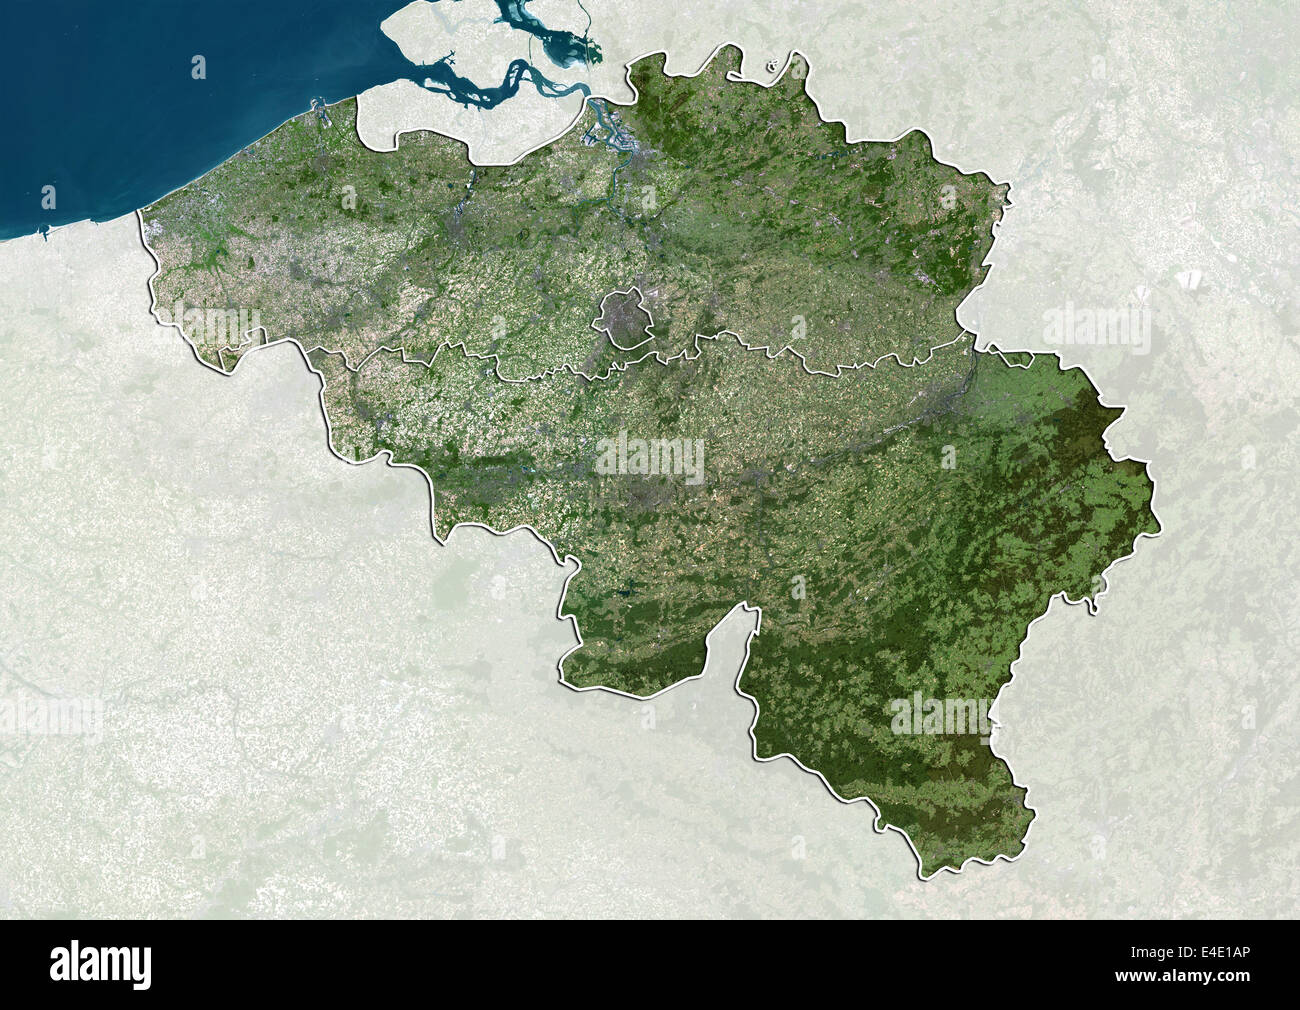 Belgium, True Colour Satellite Image With Boundaries of Regions Stock Photo